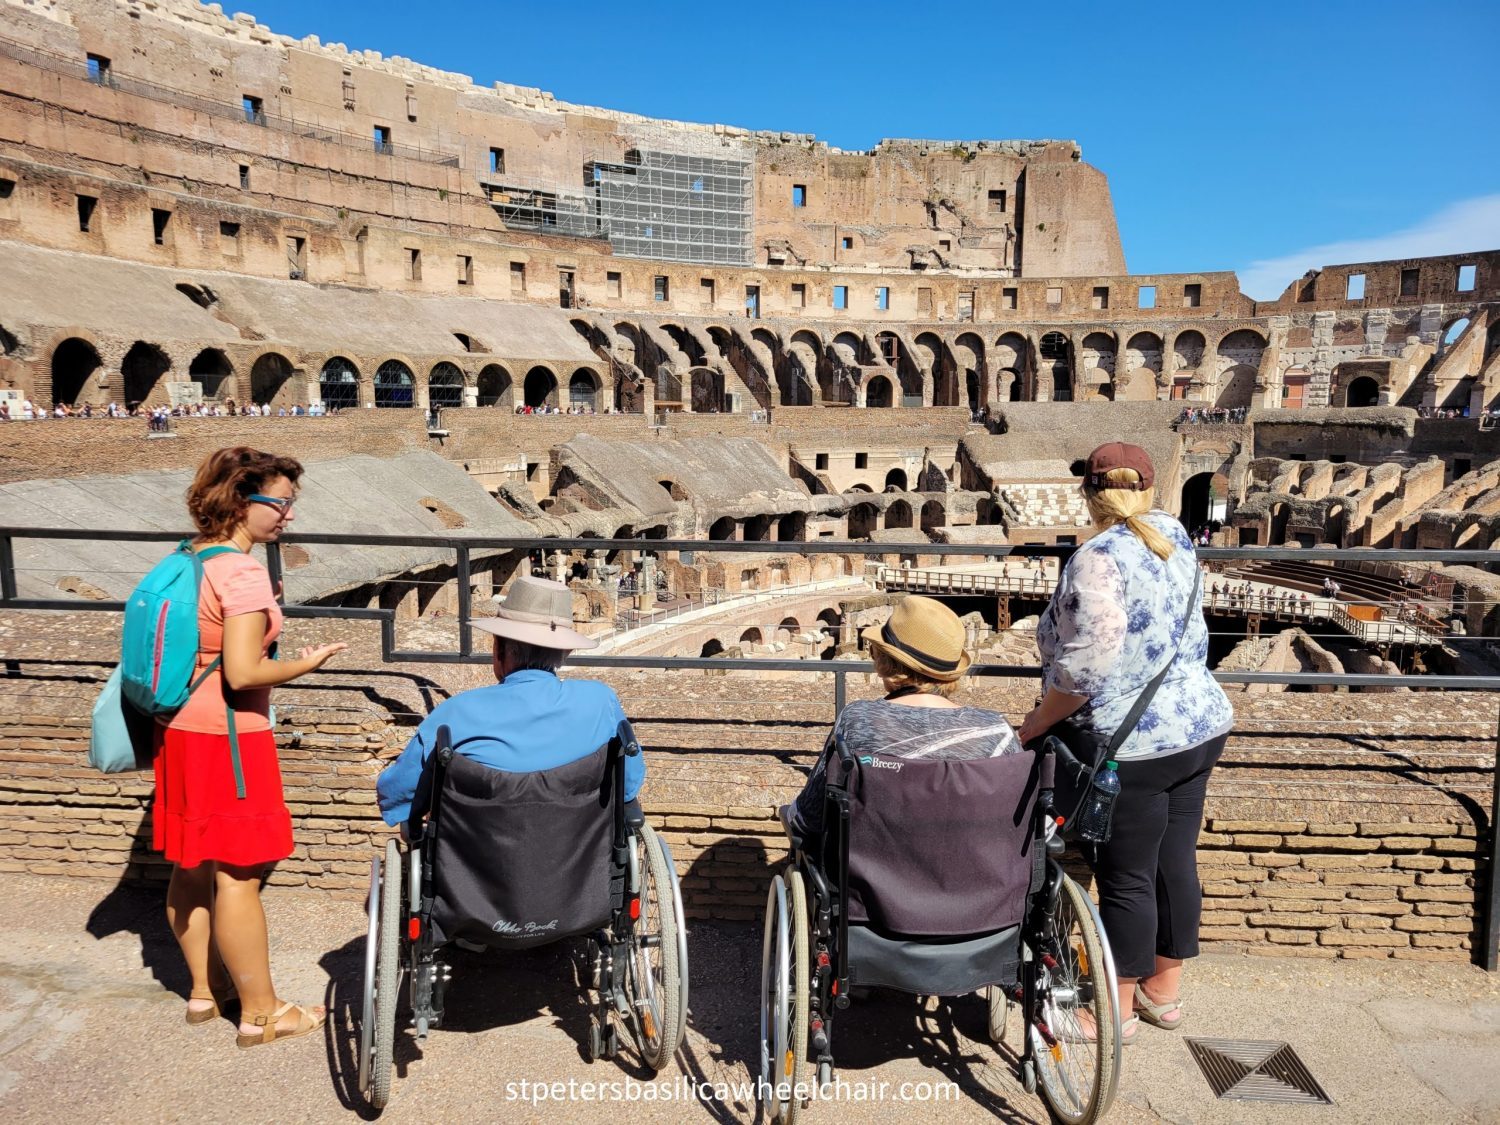 Pessaoas em Cadeira de rodas admirando o Coliseu